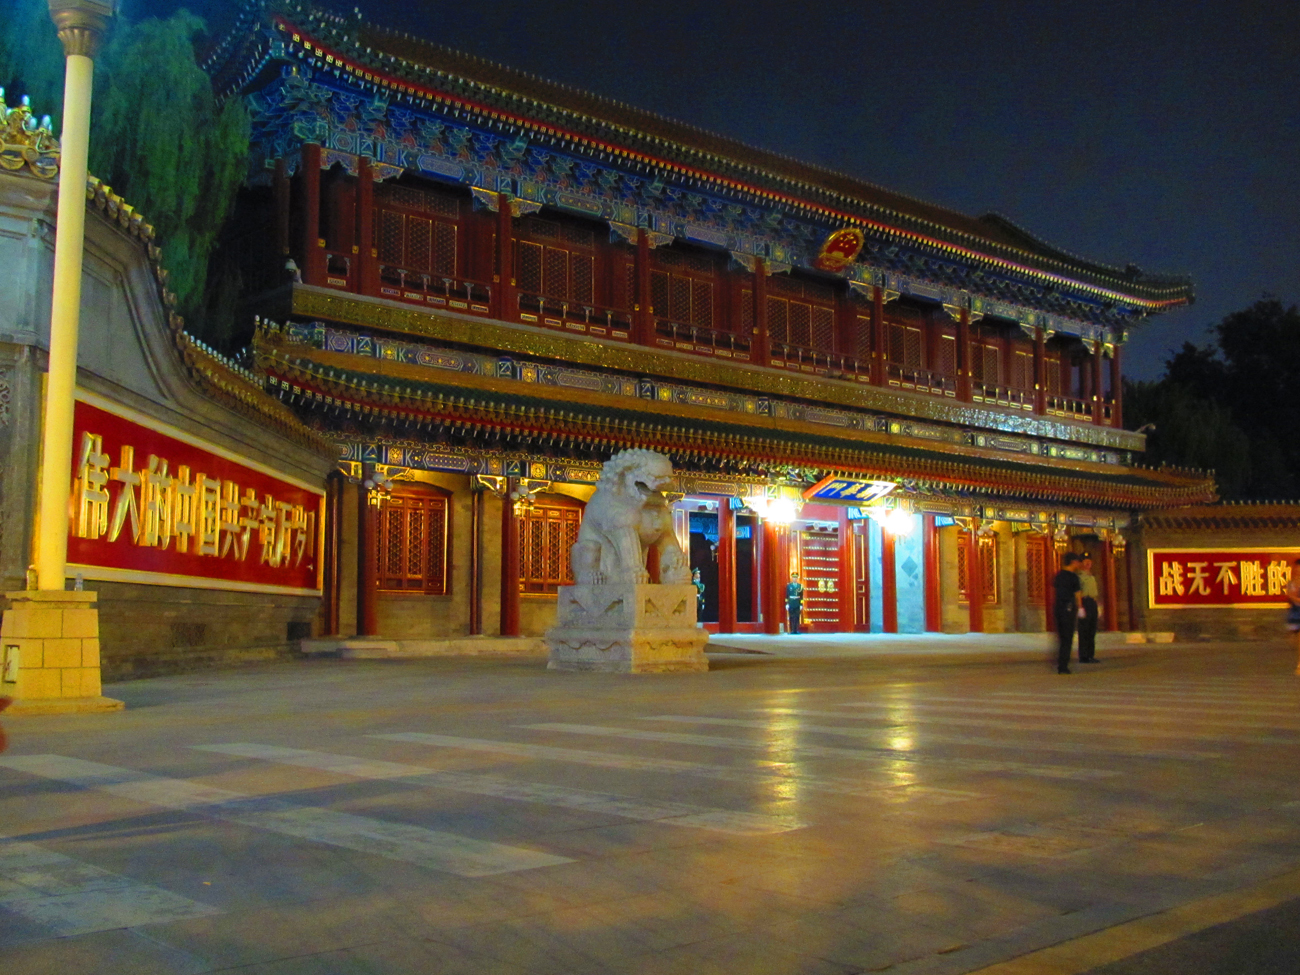 Portti Zhongnanhain muurien ympäröimään kompleksiin, jossa Kiinan kommunistisen puolueen korkein johto pitää majaansa (Kuva: Matti Puranen)